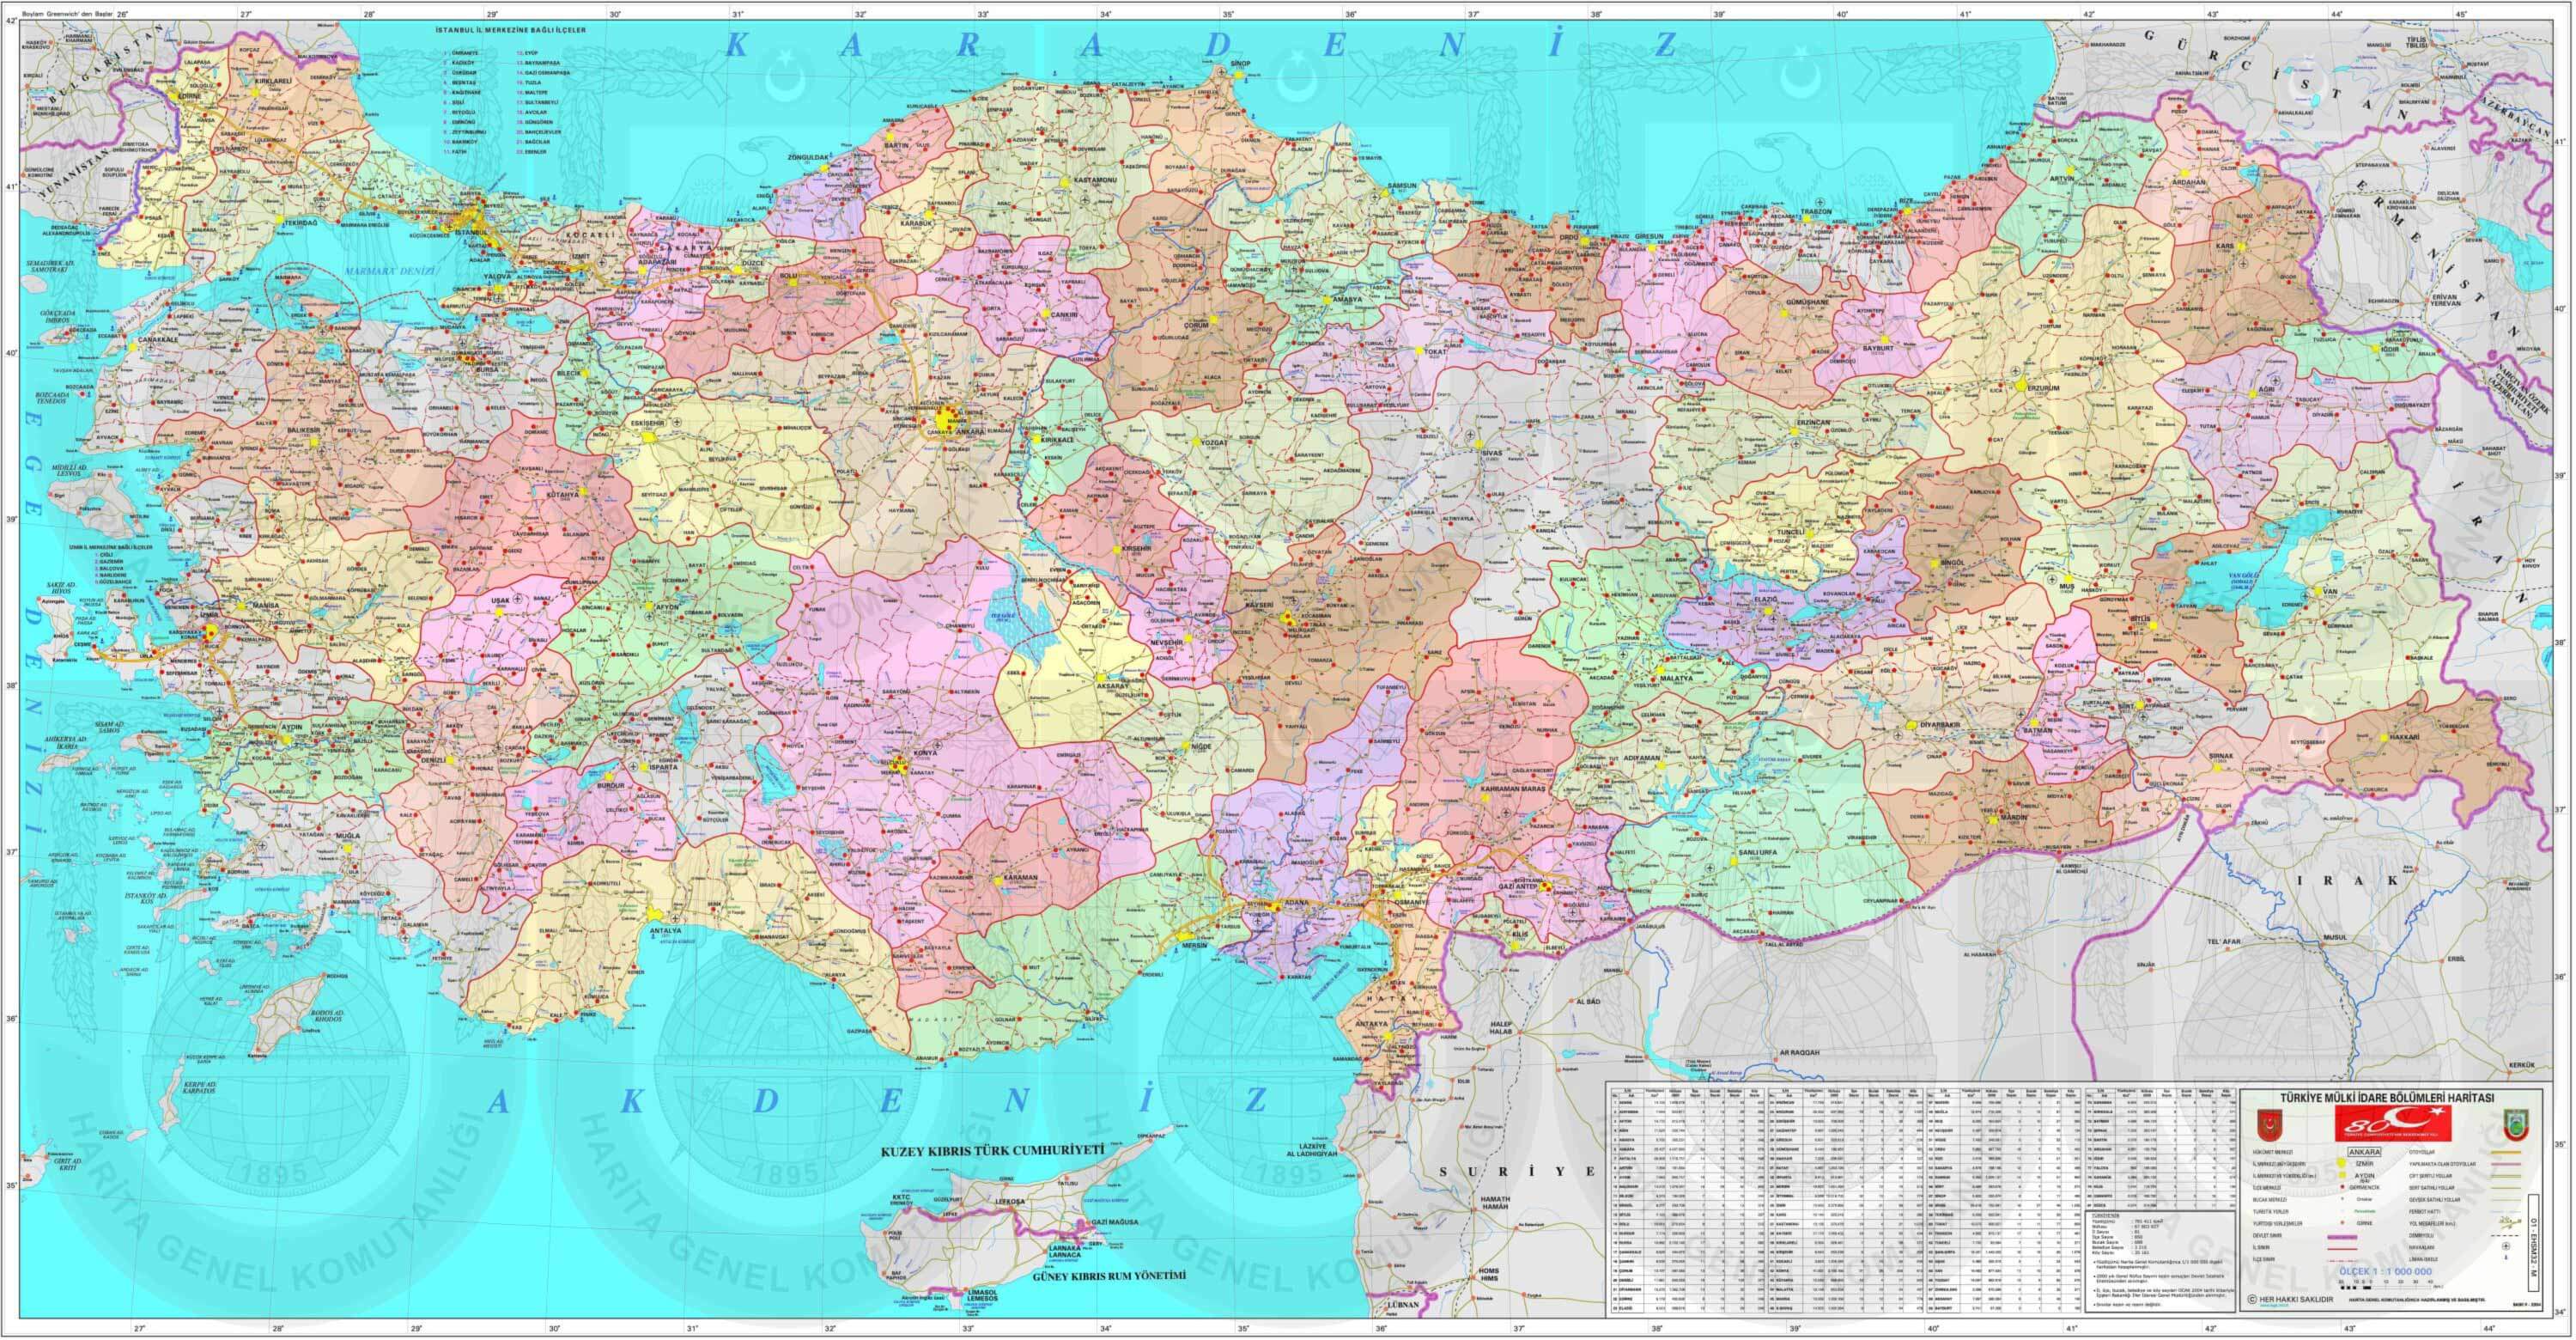 turkiye politik haritasi